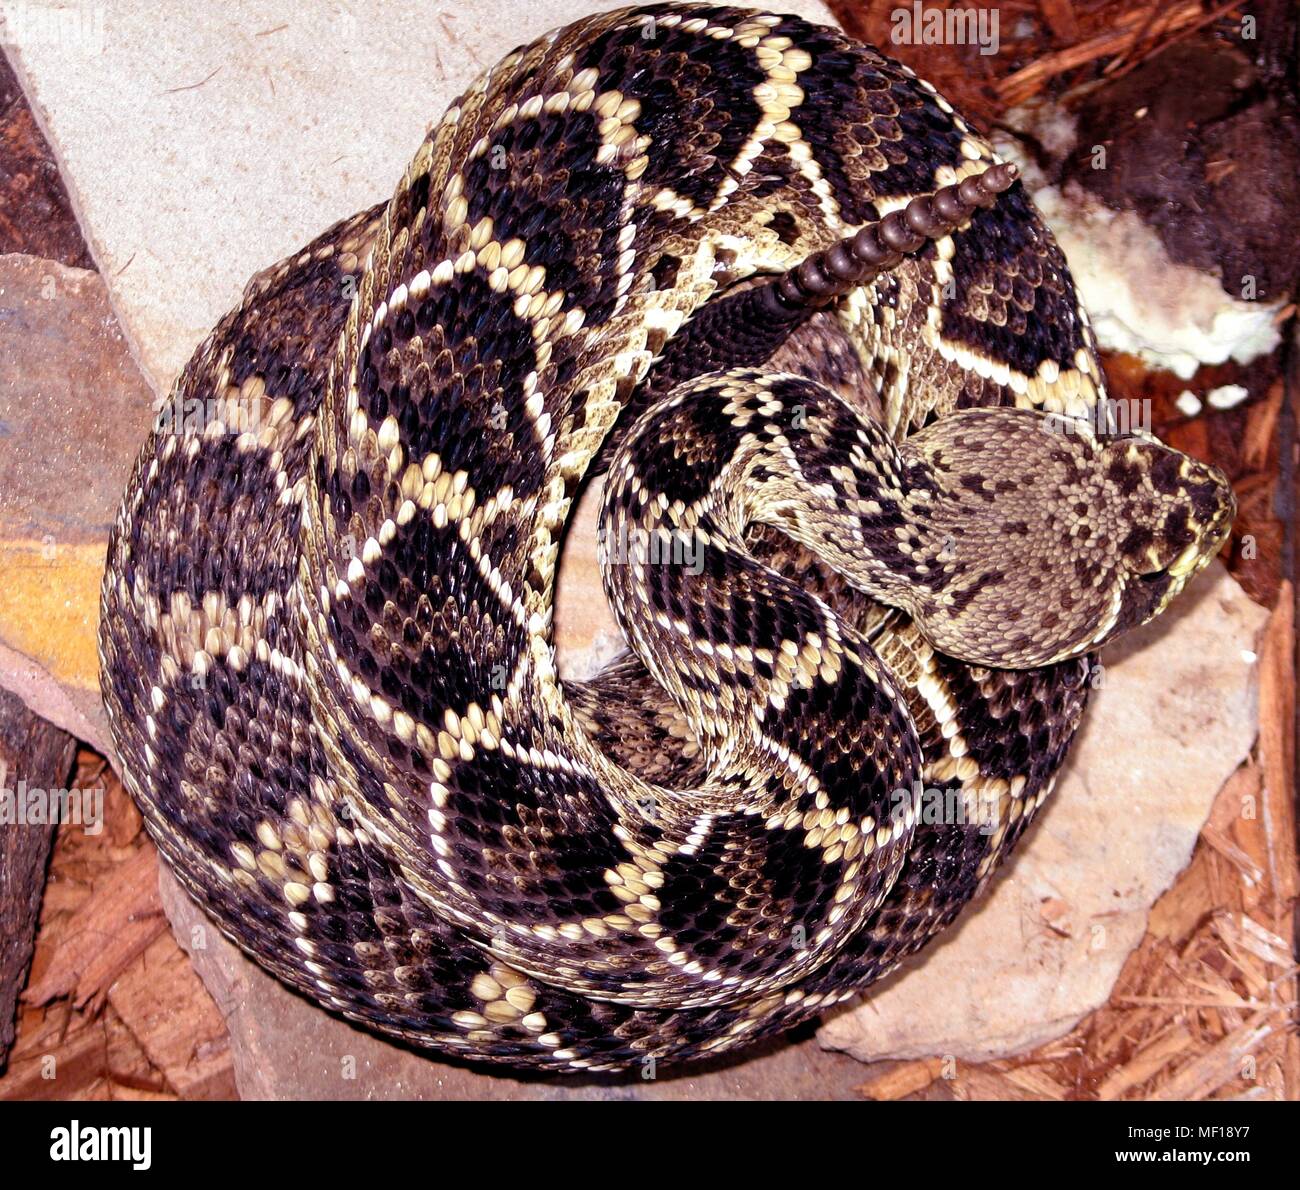 Eastern diamondback rattlesnake (Crotalus adamanteus), 2005. Immagine cortesia di centri per il controllo delle malattie (CDC) / Edward J. Wozniak. () Foto Stock